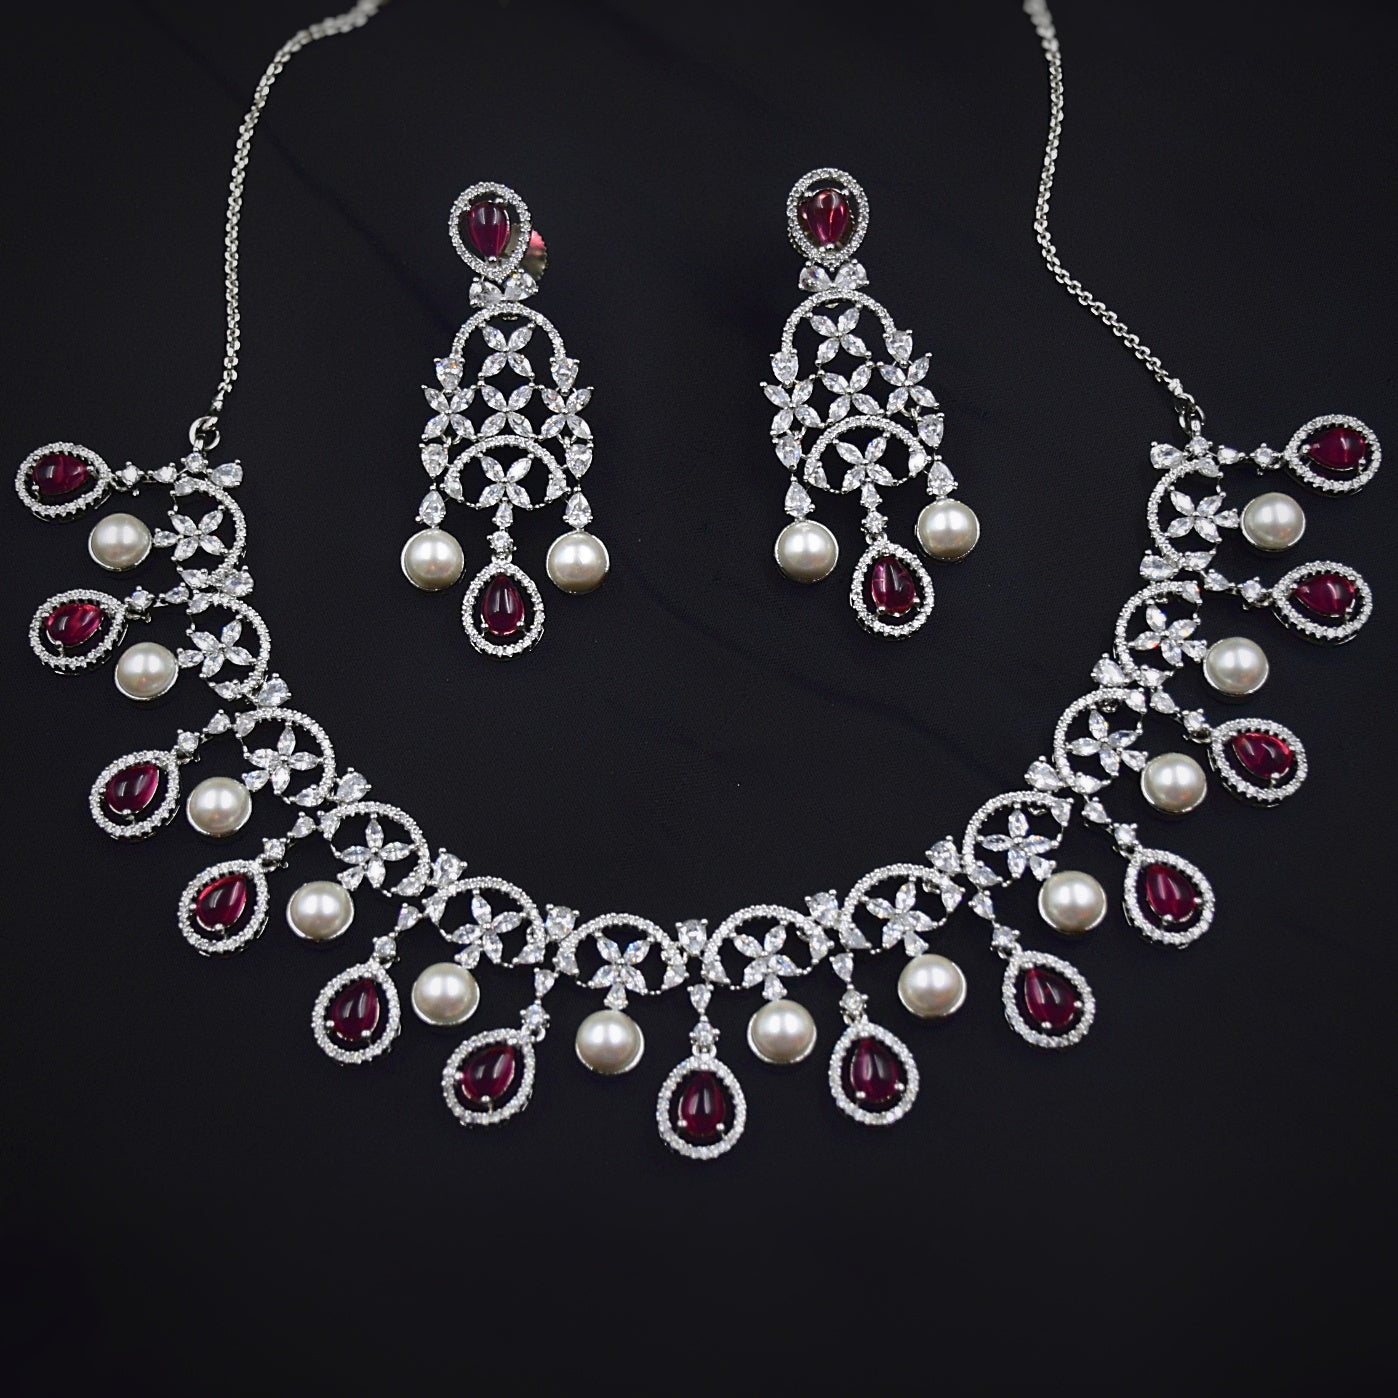 Round Neck Zircon/AD Necklace Set 6014-68 - Dazzles Jewellery